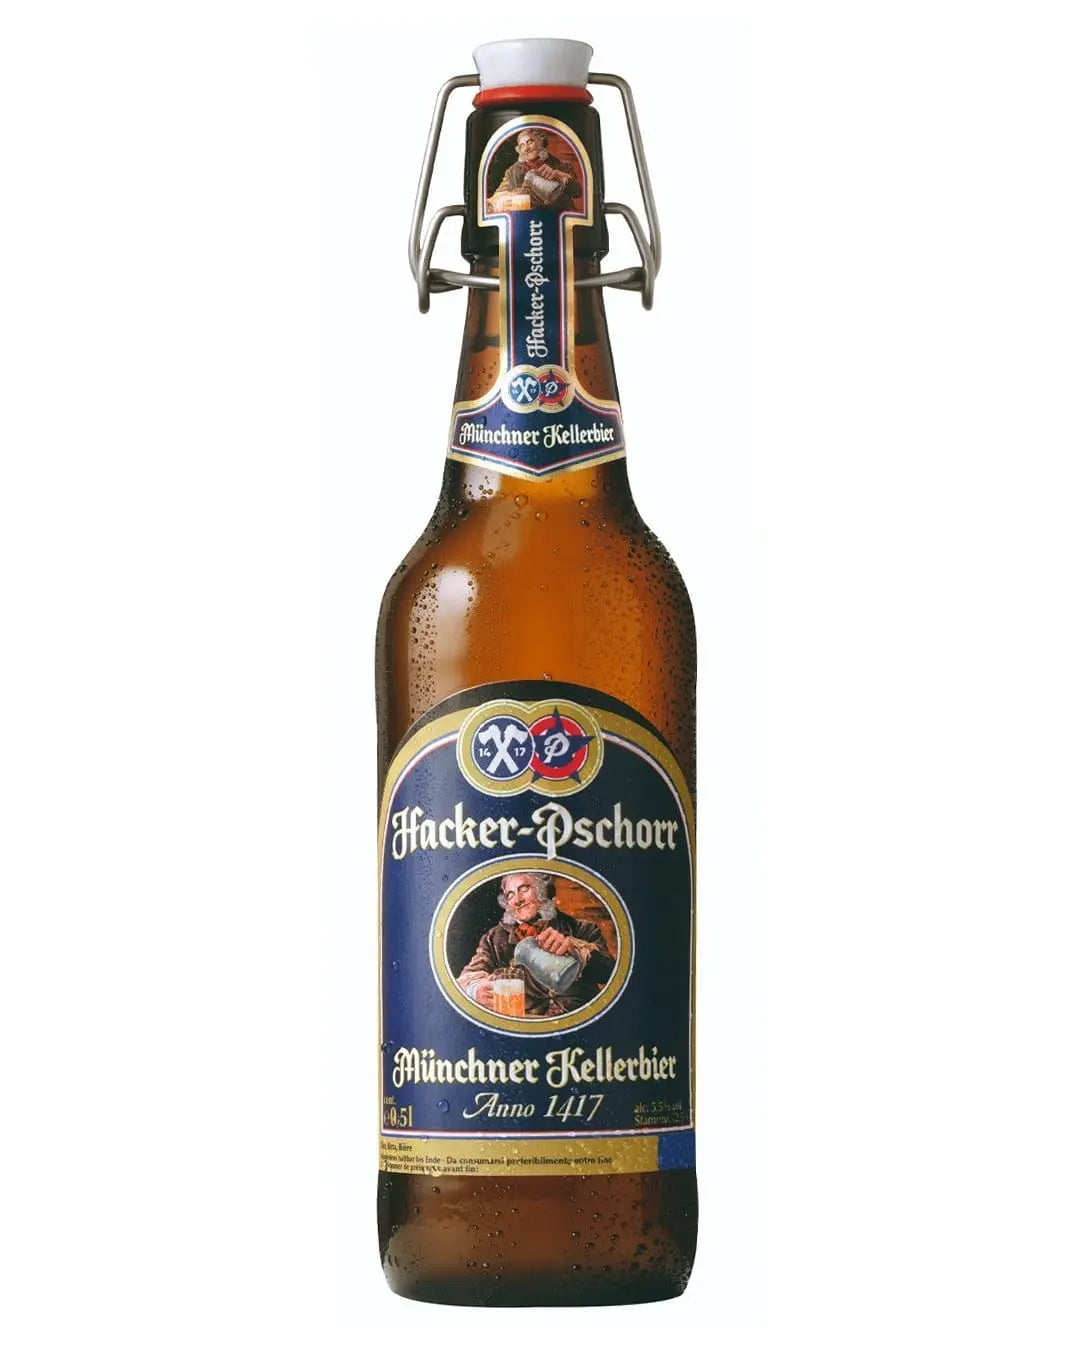 Hacker Pschorr Kellerbier Bottle, 500 ml Beer